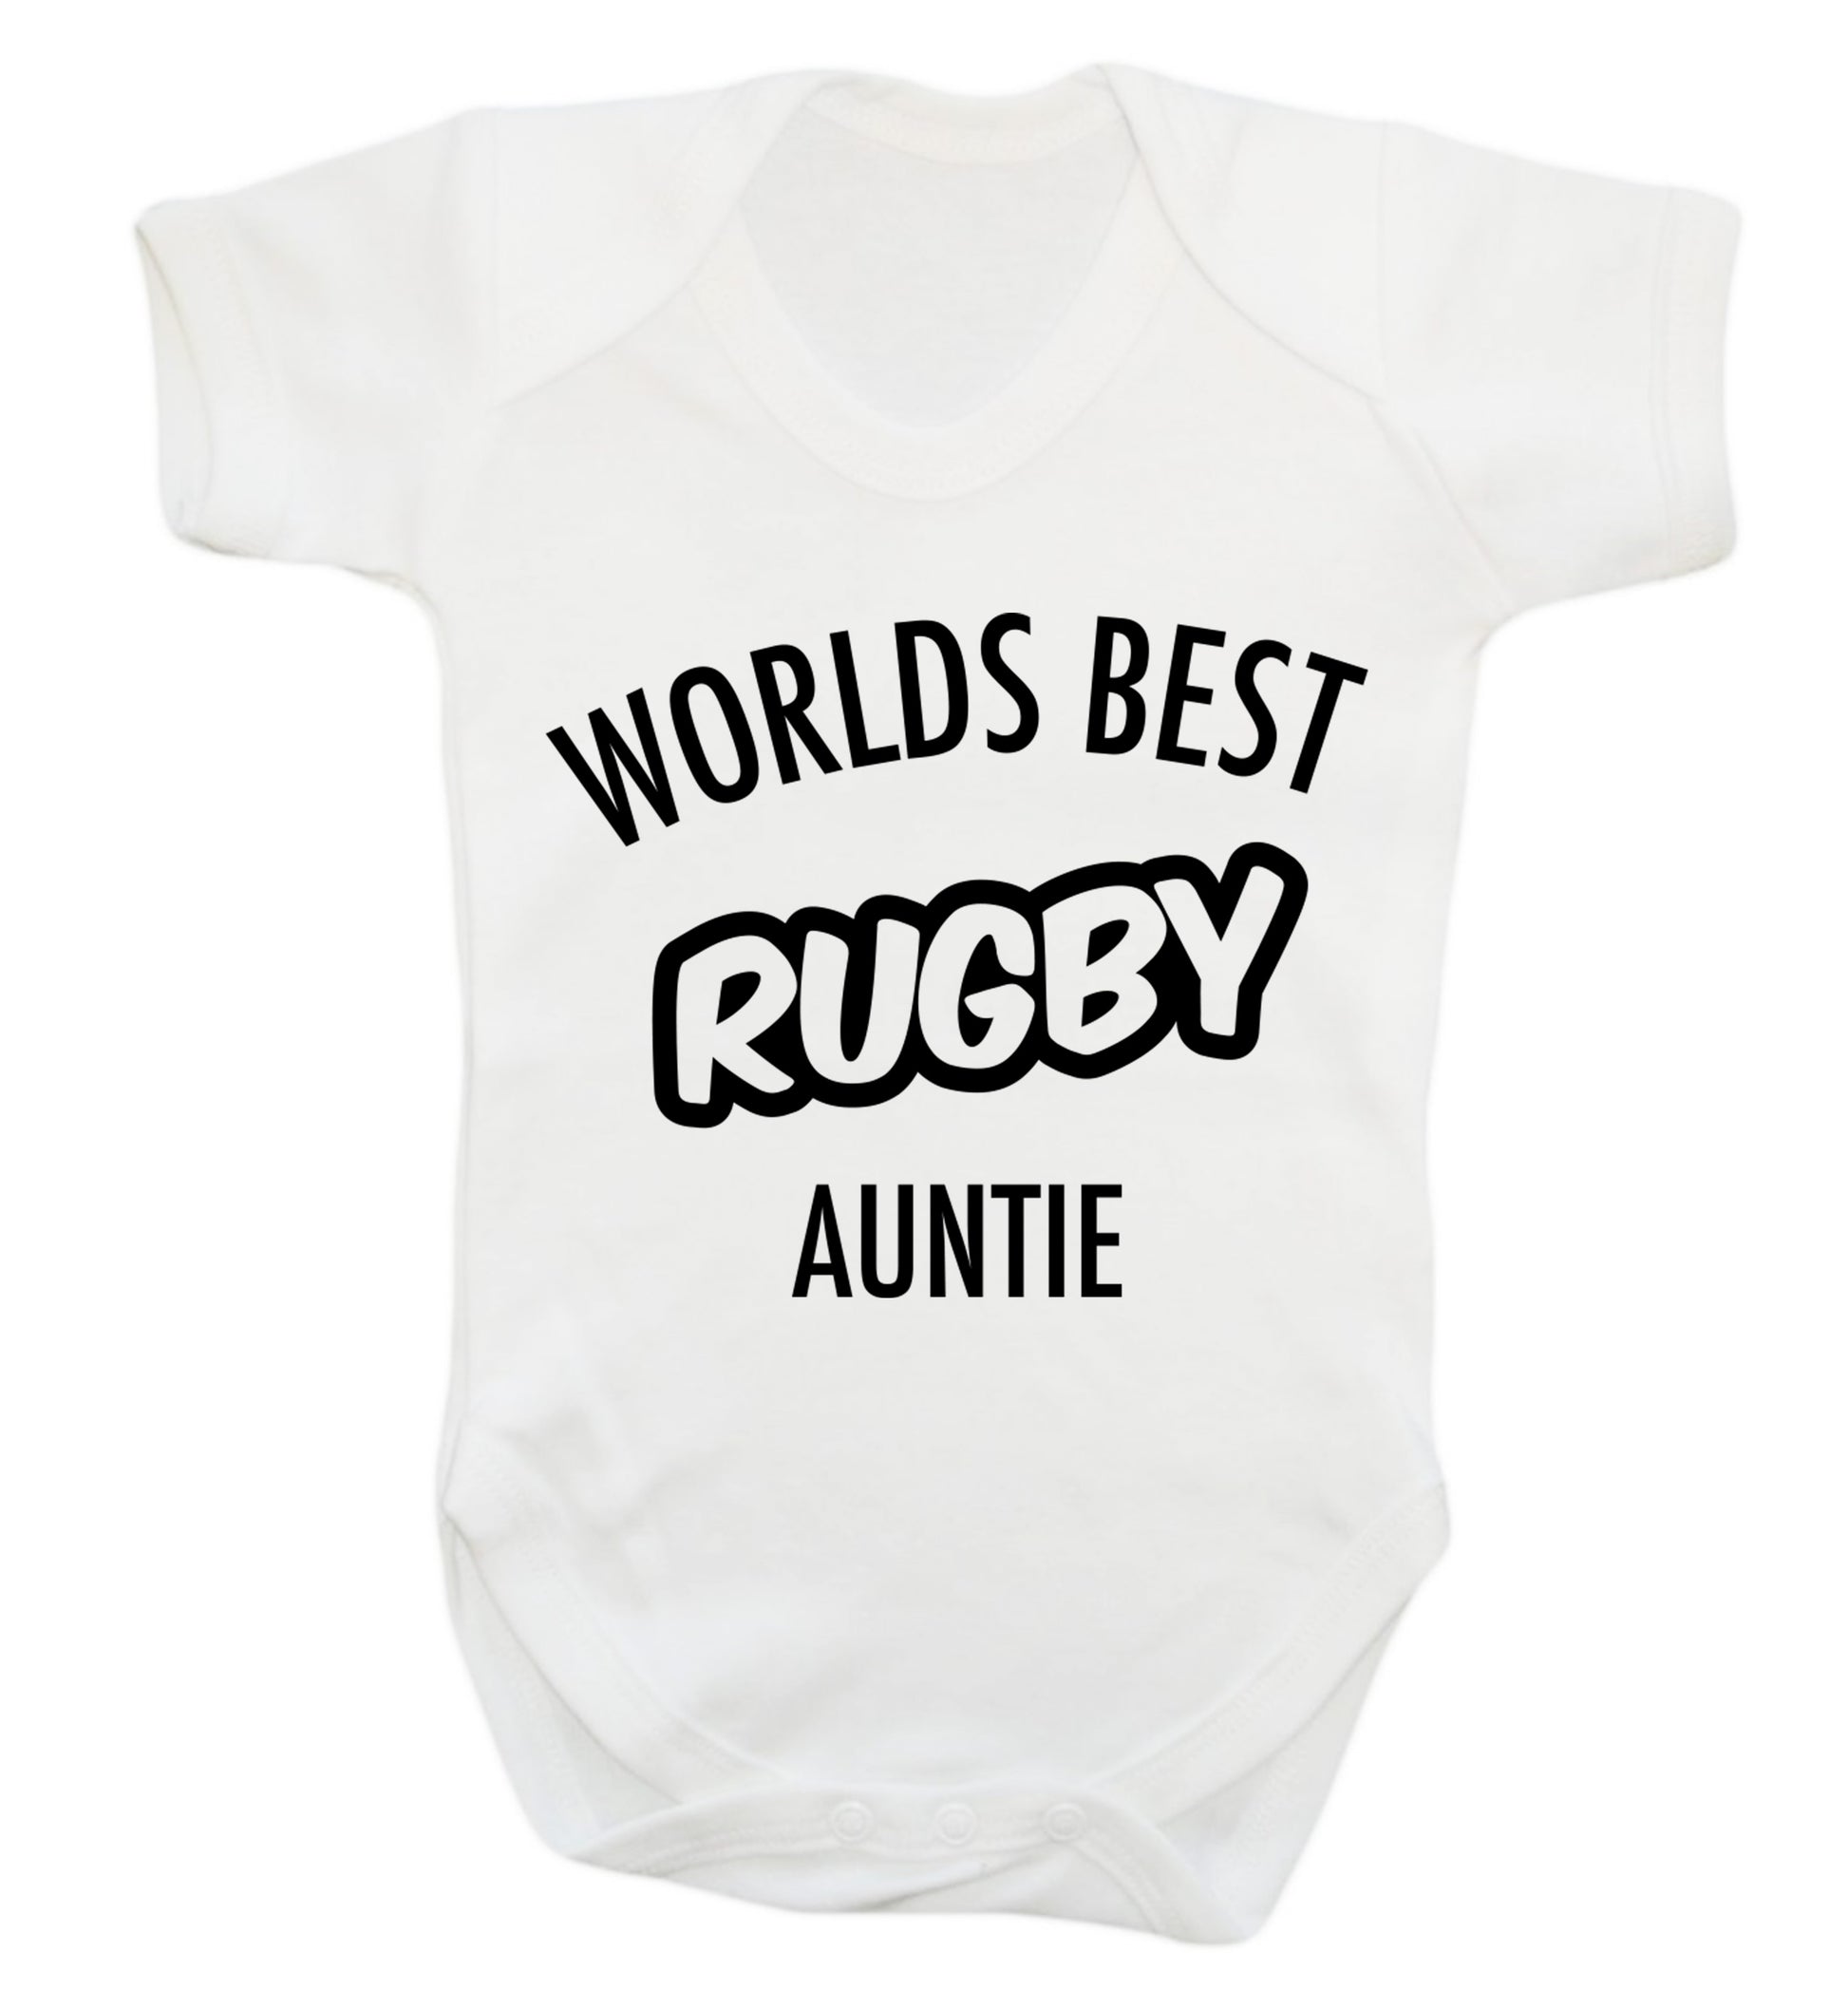 Worlds best rugby auntie Baby Vest white 18-24 months